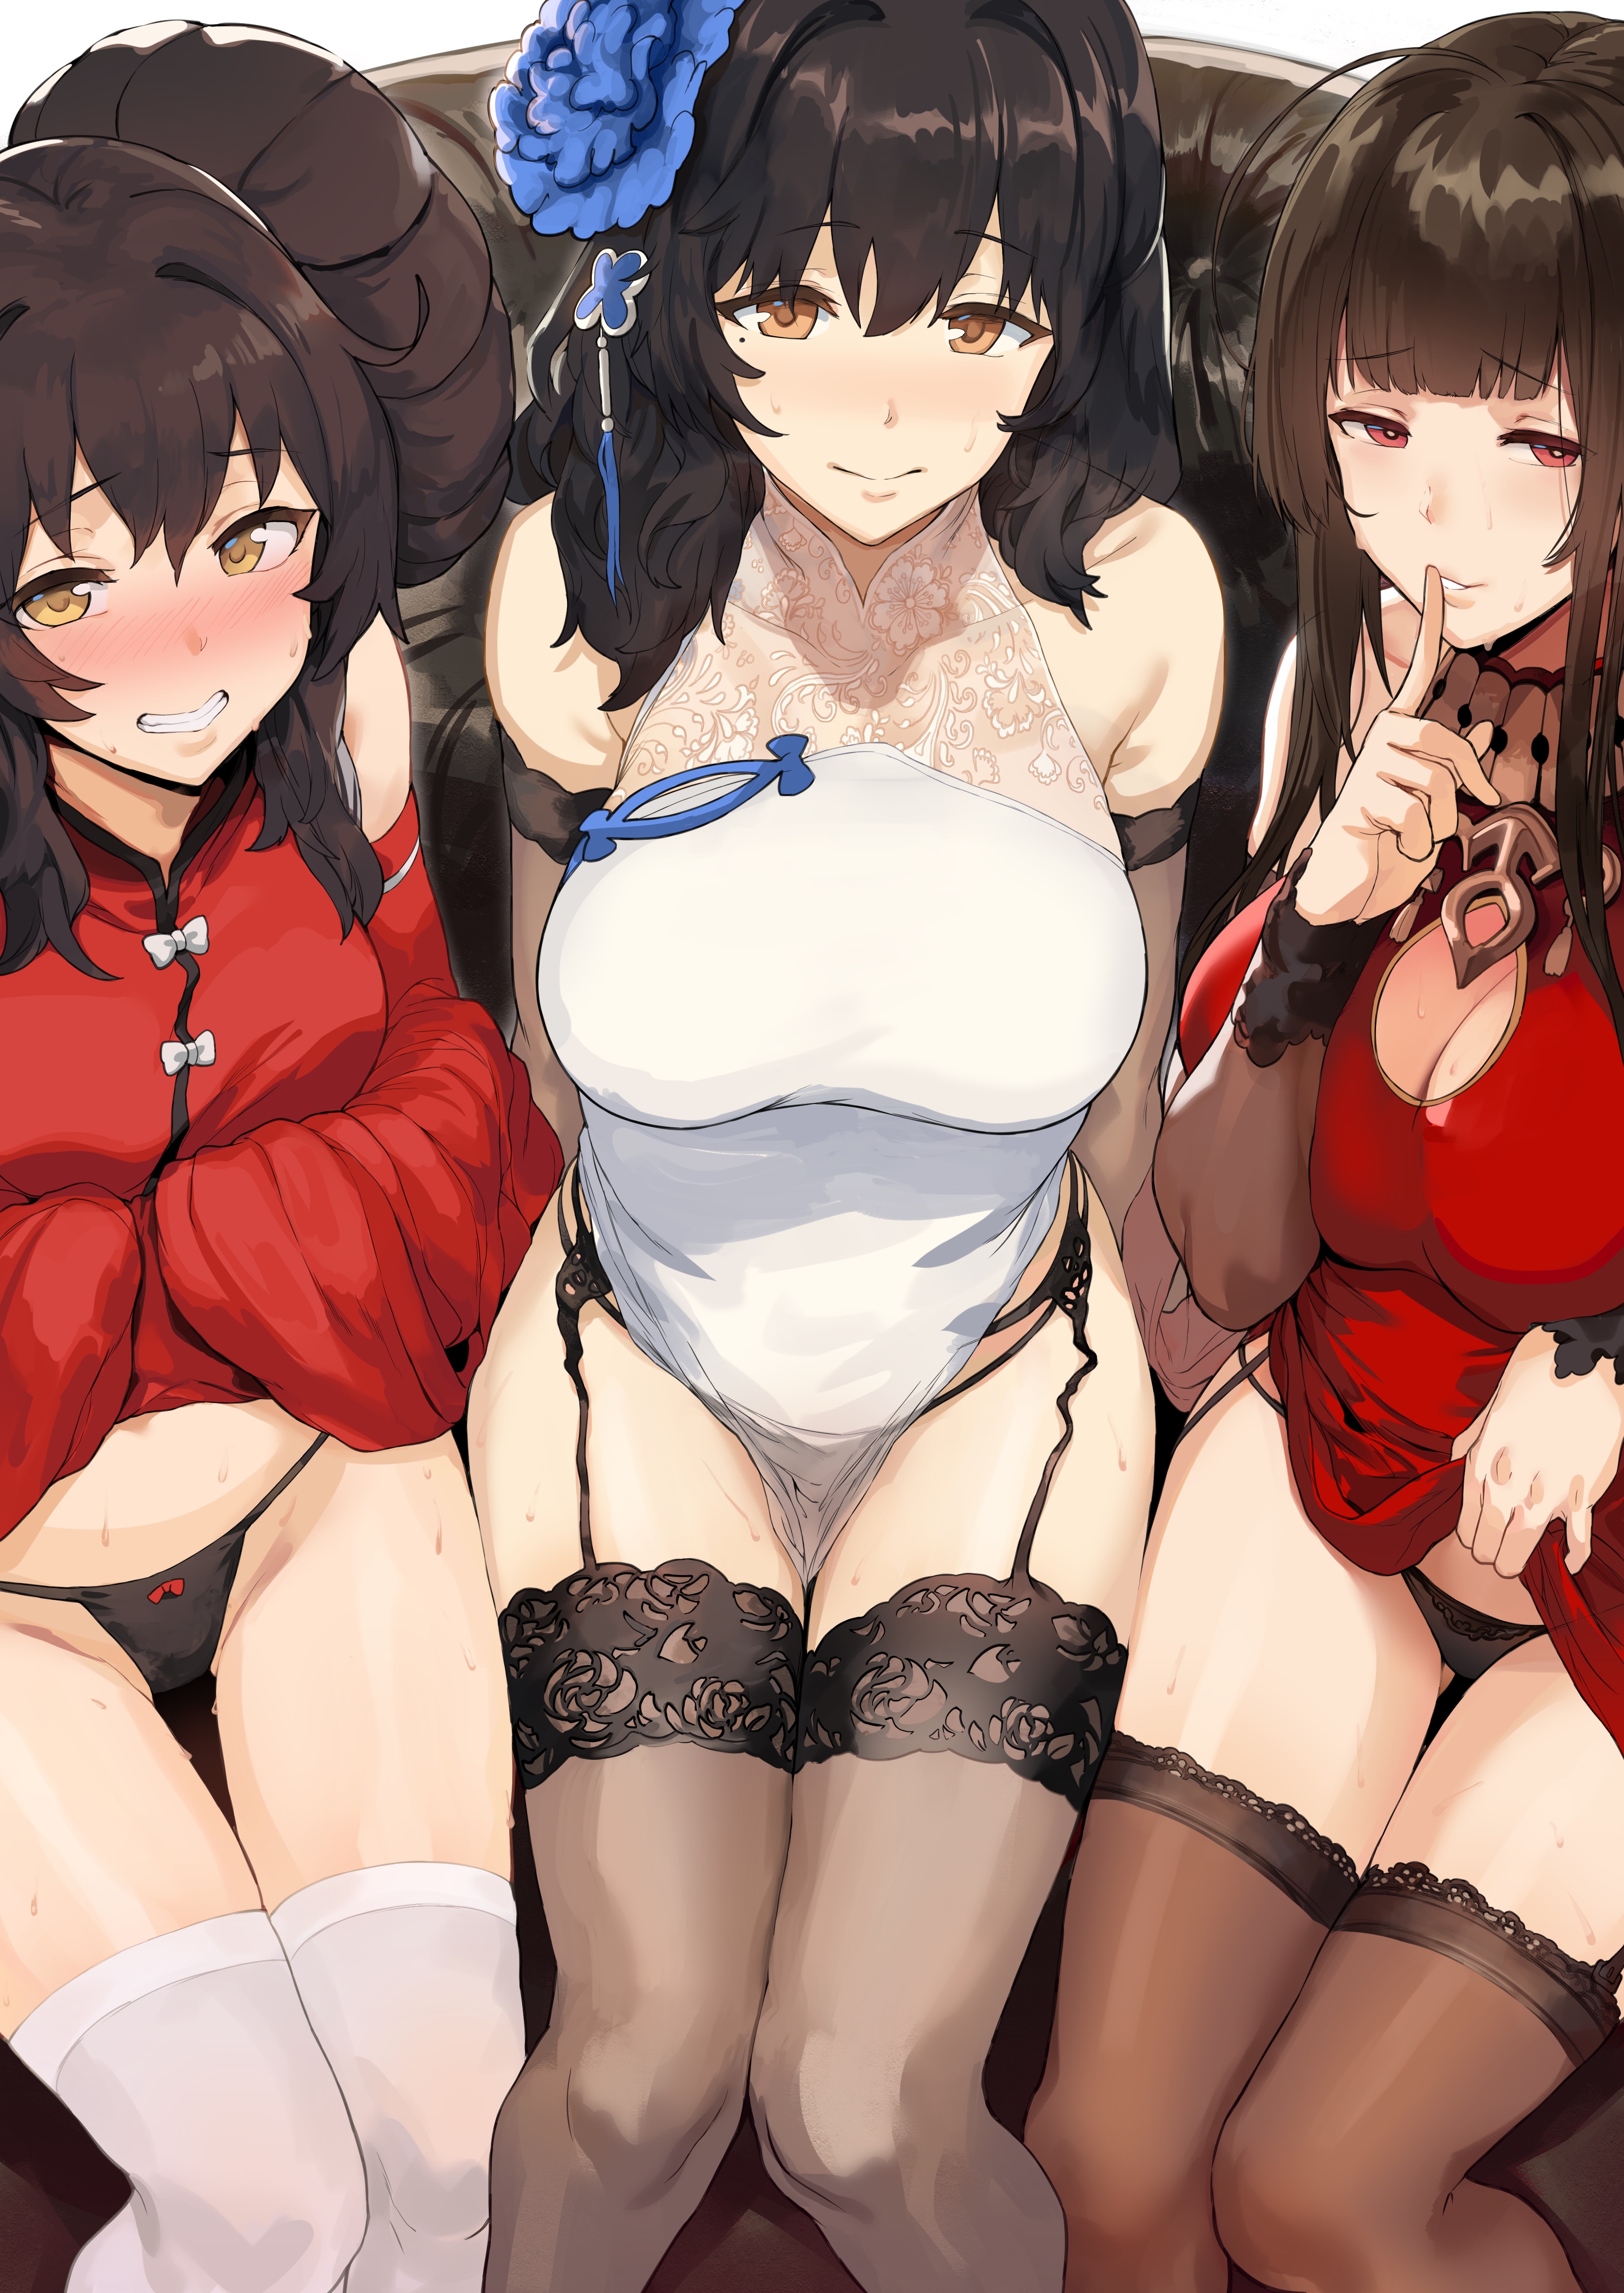 Anime 3583x5059 anime anime girls stockings panties garter belt blushing lifting clothes flower in hair Girls Frontline Type 97 (Girls Frontline) Type 95 qbz-95 (Girls Frontline) DSR-50 (Girls Frontline)